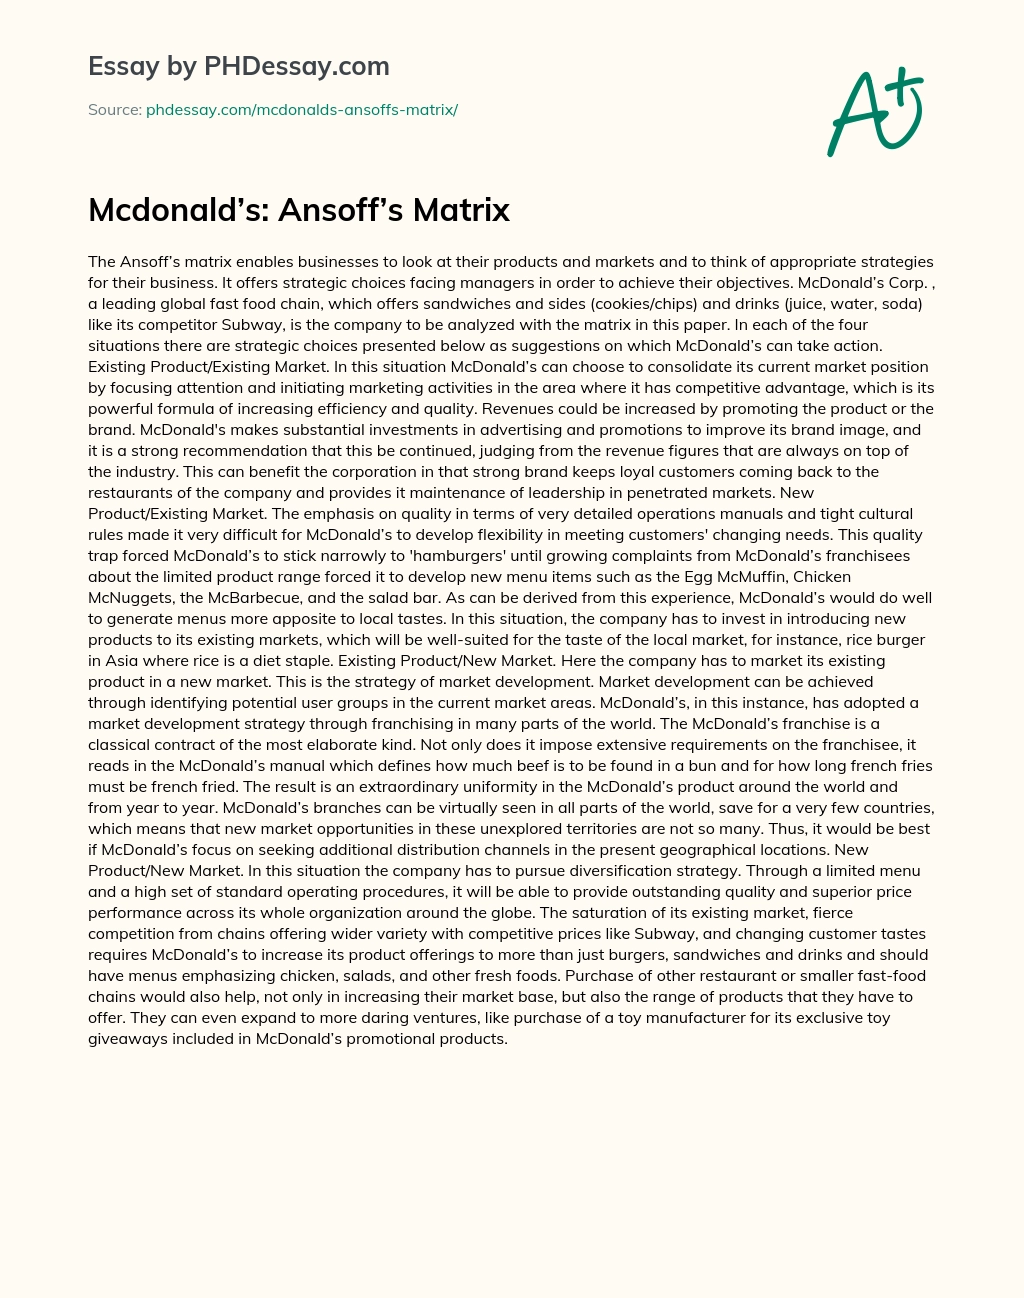 Mcdonald’s: Ansoff’s Matrix essay